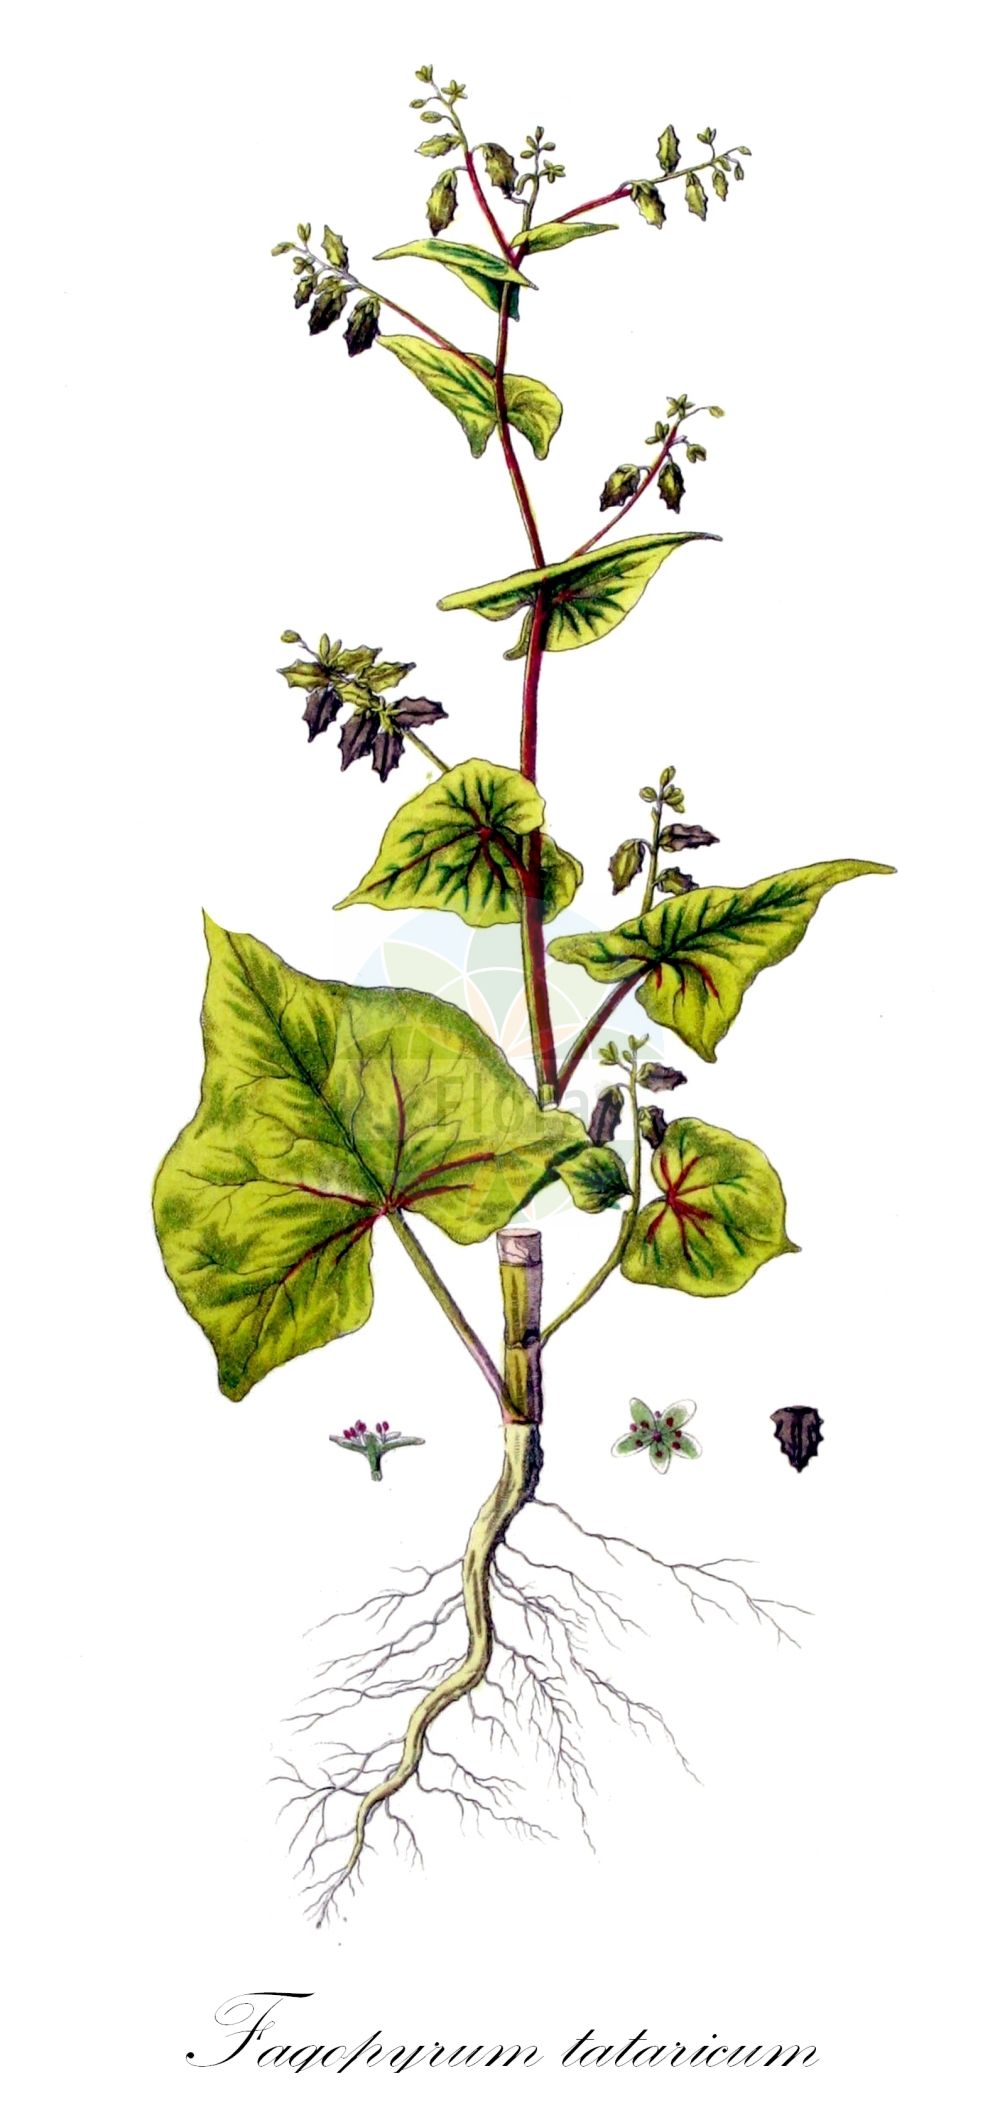 Historische Abbildung von Fagopyrum tataricum (Tataren-Buchweizen - Green Buckwheat). Das Bild zeigt Blatt, Bluete, Frucht und Same. ---- Historical Drawing of Fagopyrum tataricum (Tataren-Buchweizen - Green Buckwheat). The image is showing leaf, flower, fruit and seed.(Fagopyrum tataricum,Tataren-Buchweizen,Green Buckwheat,Fagopyrum tataricum,Polygonum tataricum,Tataren-Buchweizen,Falscher Buchweizen,Tatarischer Buchweizen,Green Buckwheat,Tartar Buckwheat,Tartary Buckwheat,Fagopyrum,Buchweizen,Buckwheat,Polygonaceae,Knöterichgewächse,Knotgrass family,Blatt,Bluete,Frucht,Same,leaf,flower,fruit,seed,Kops (1800-1934))